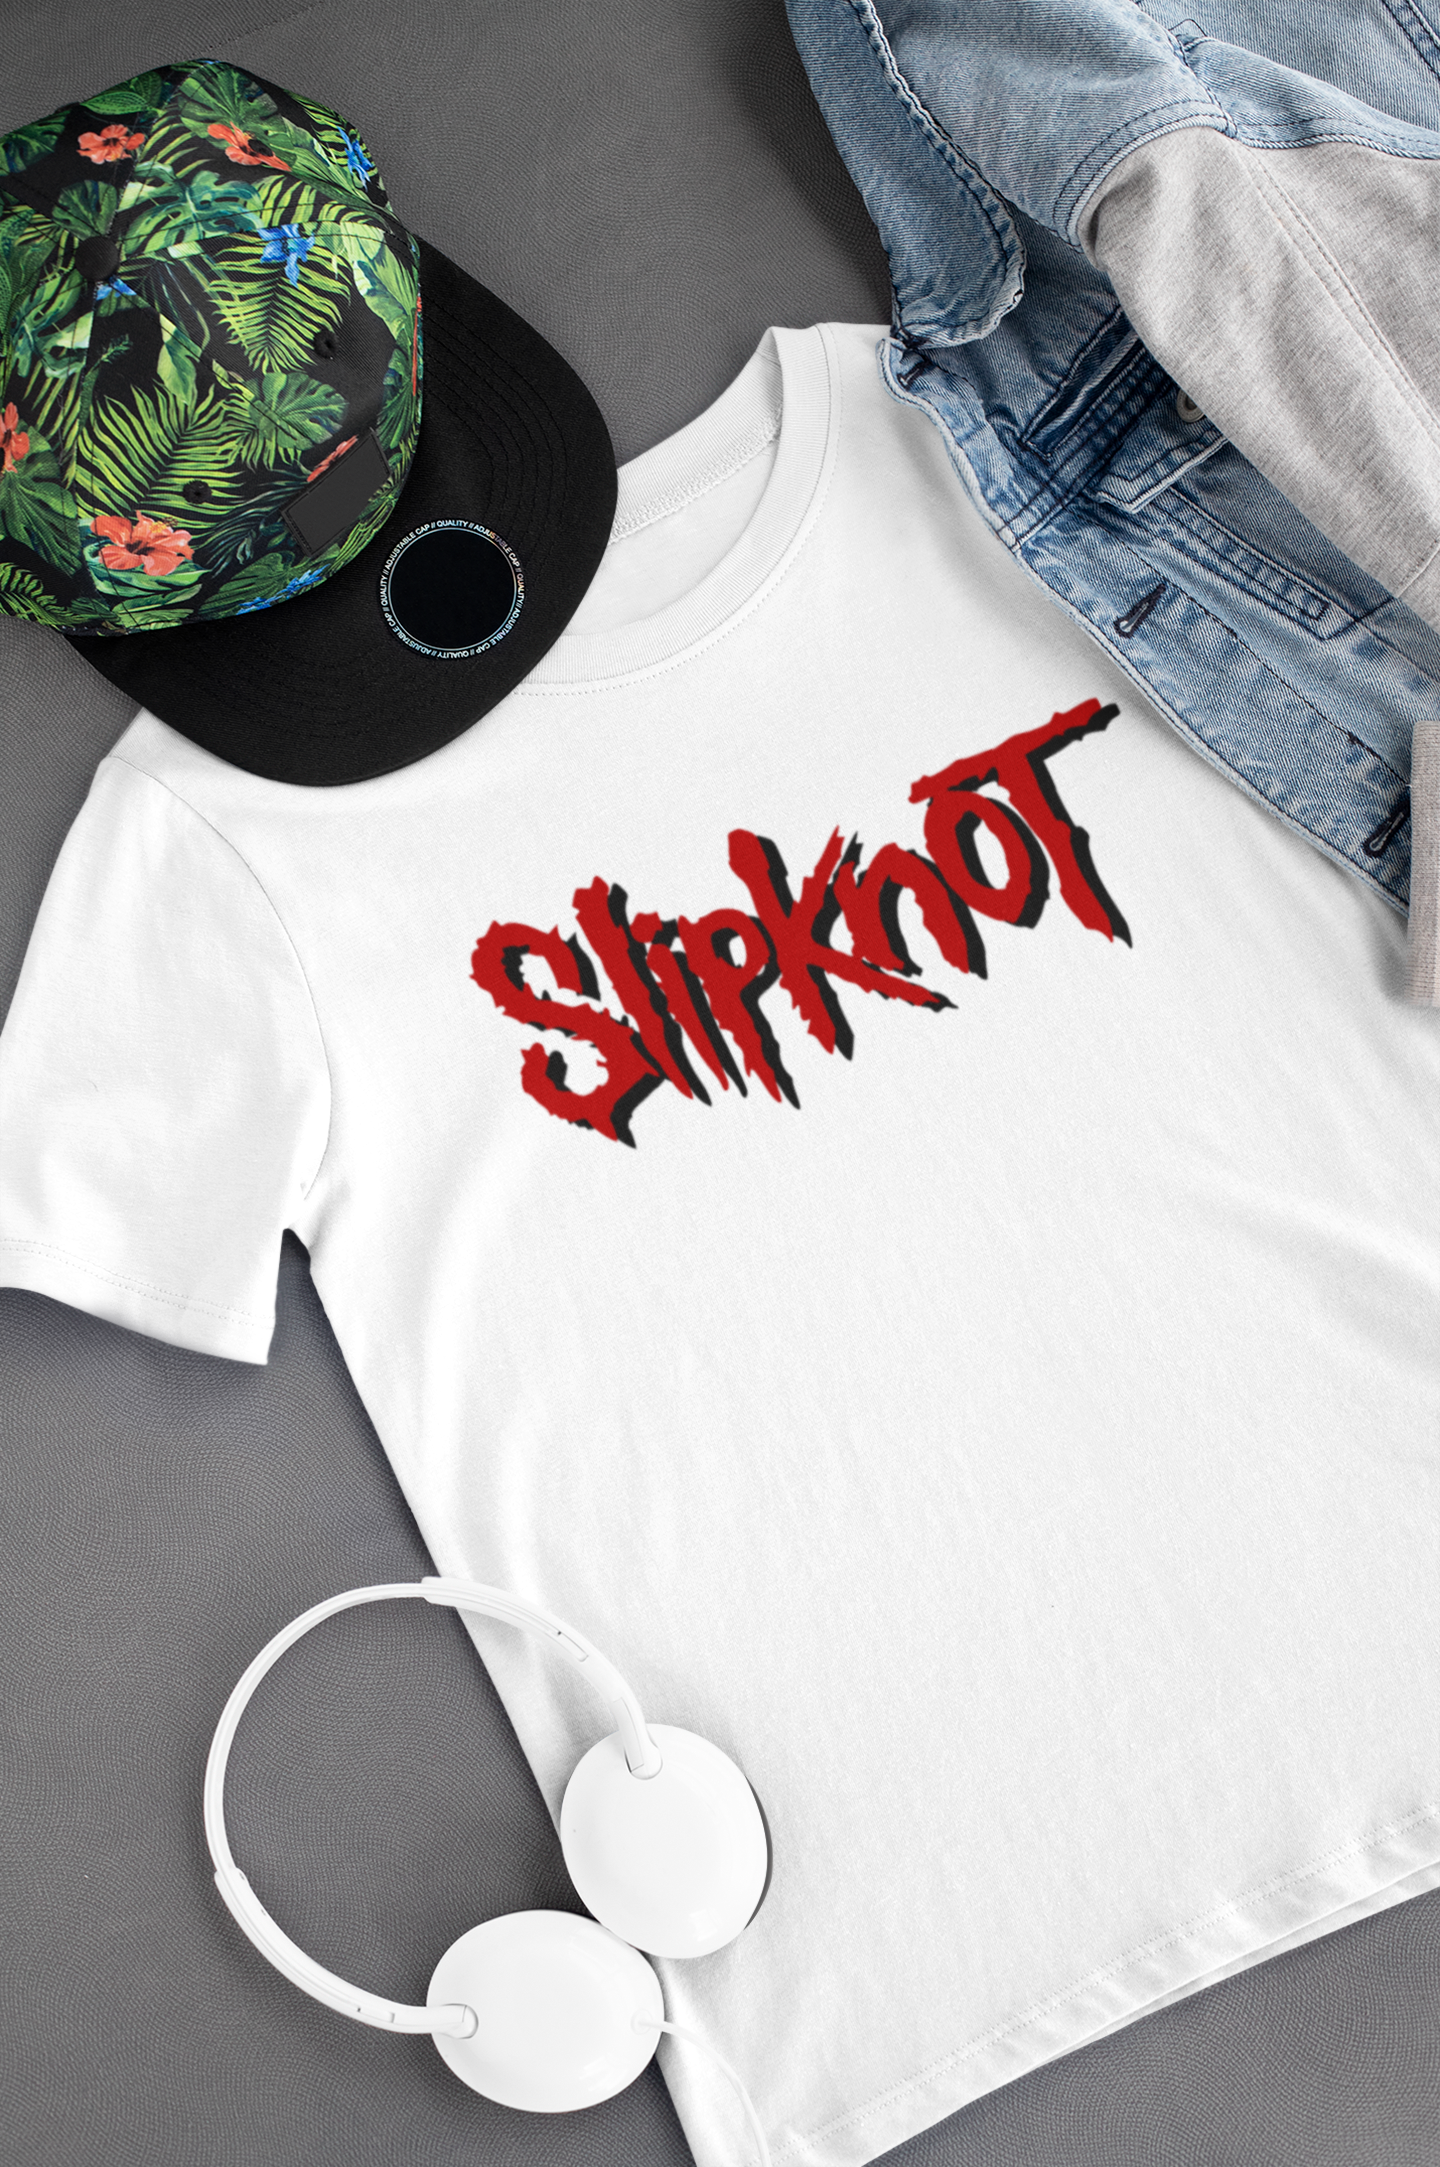 Camiseta "Slipknot" Clássica - Música